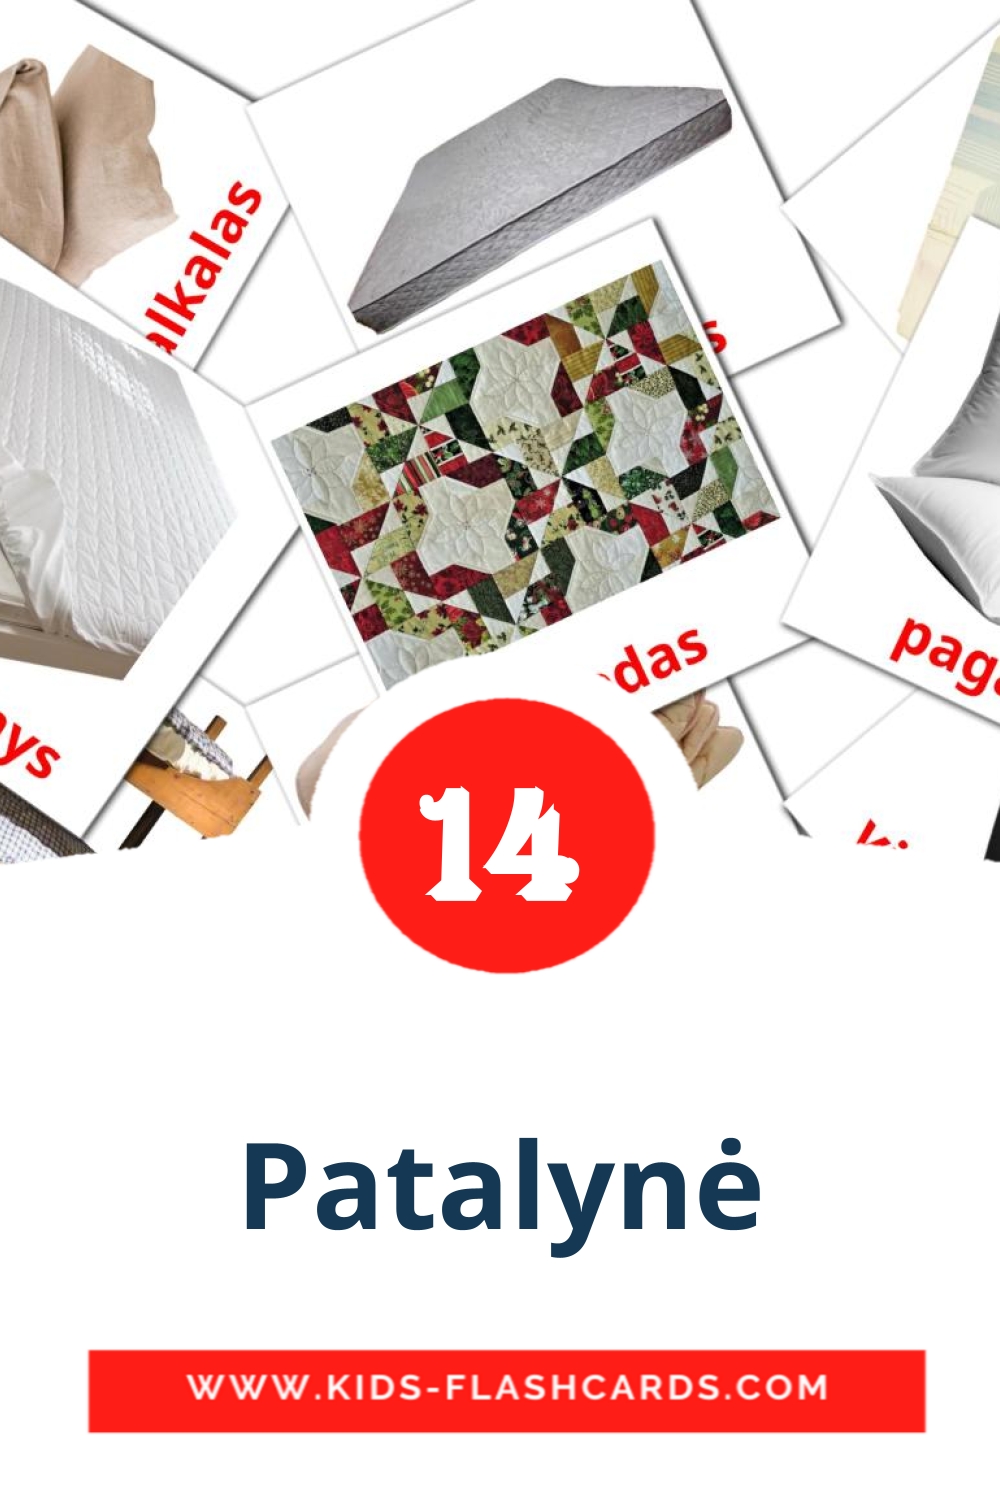 14 Cartões com Imagens de Patalynė para Jardim de Infância em lituano